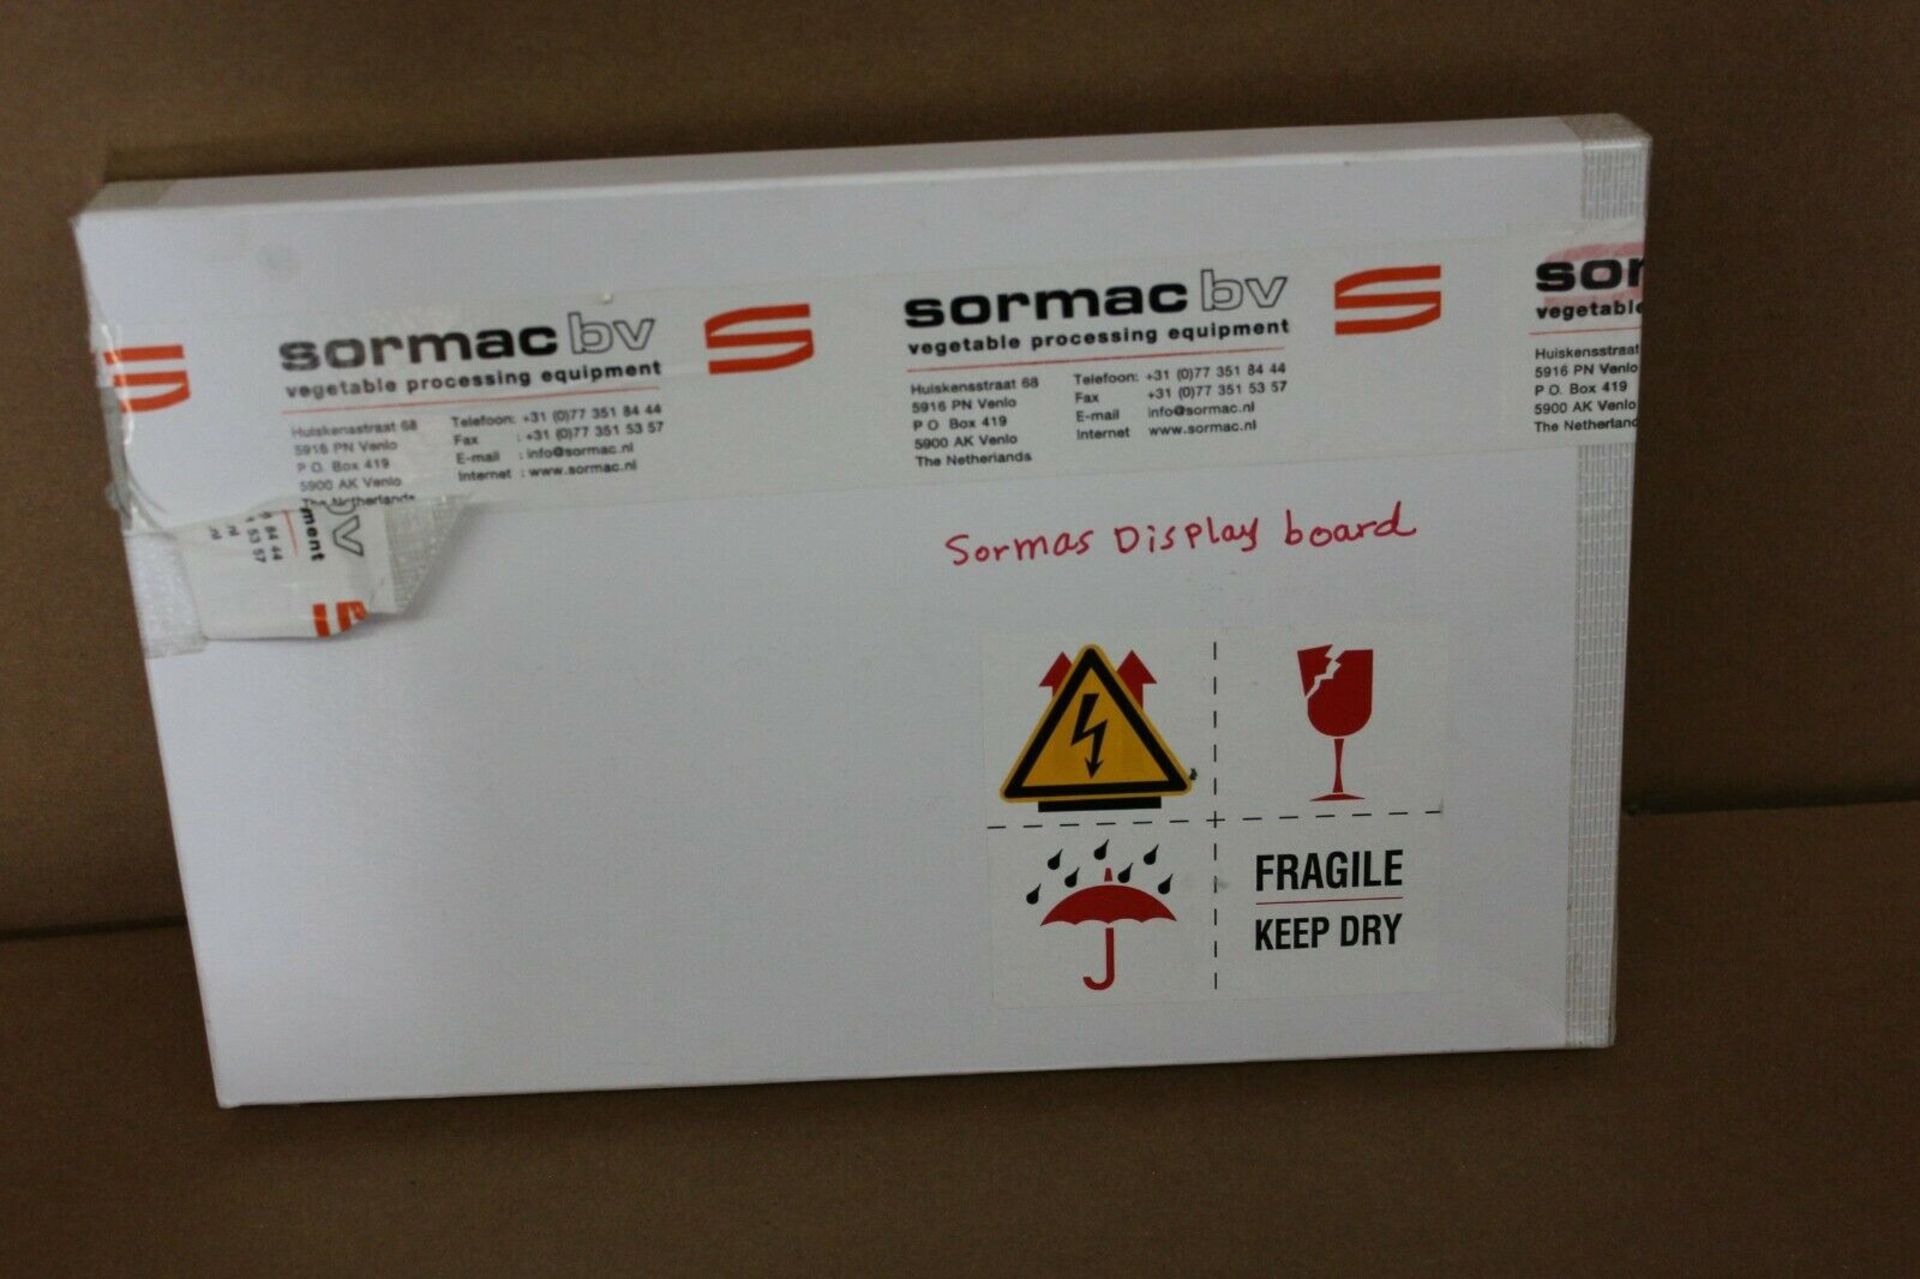 NEW SORMAC DISPLAY PCB BOARD